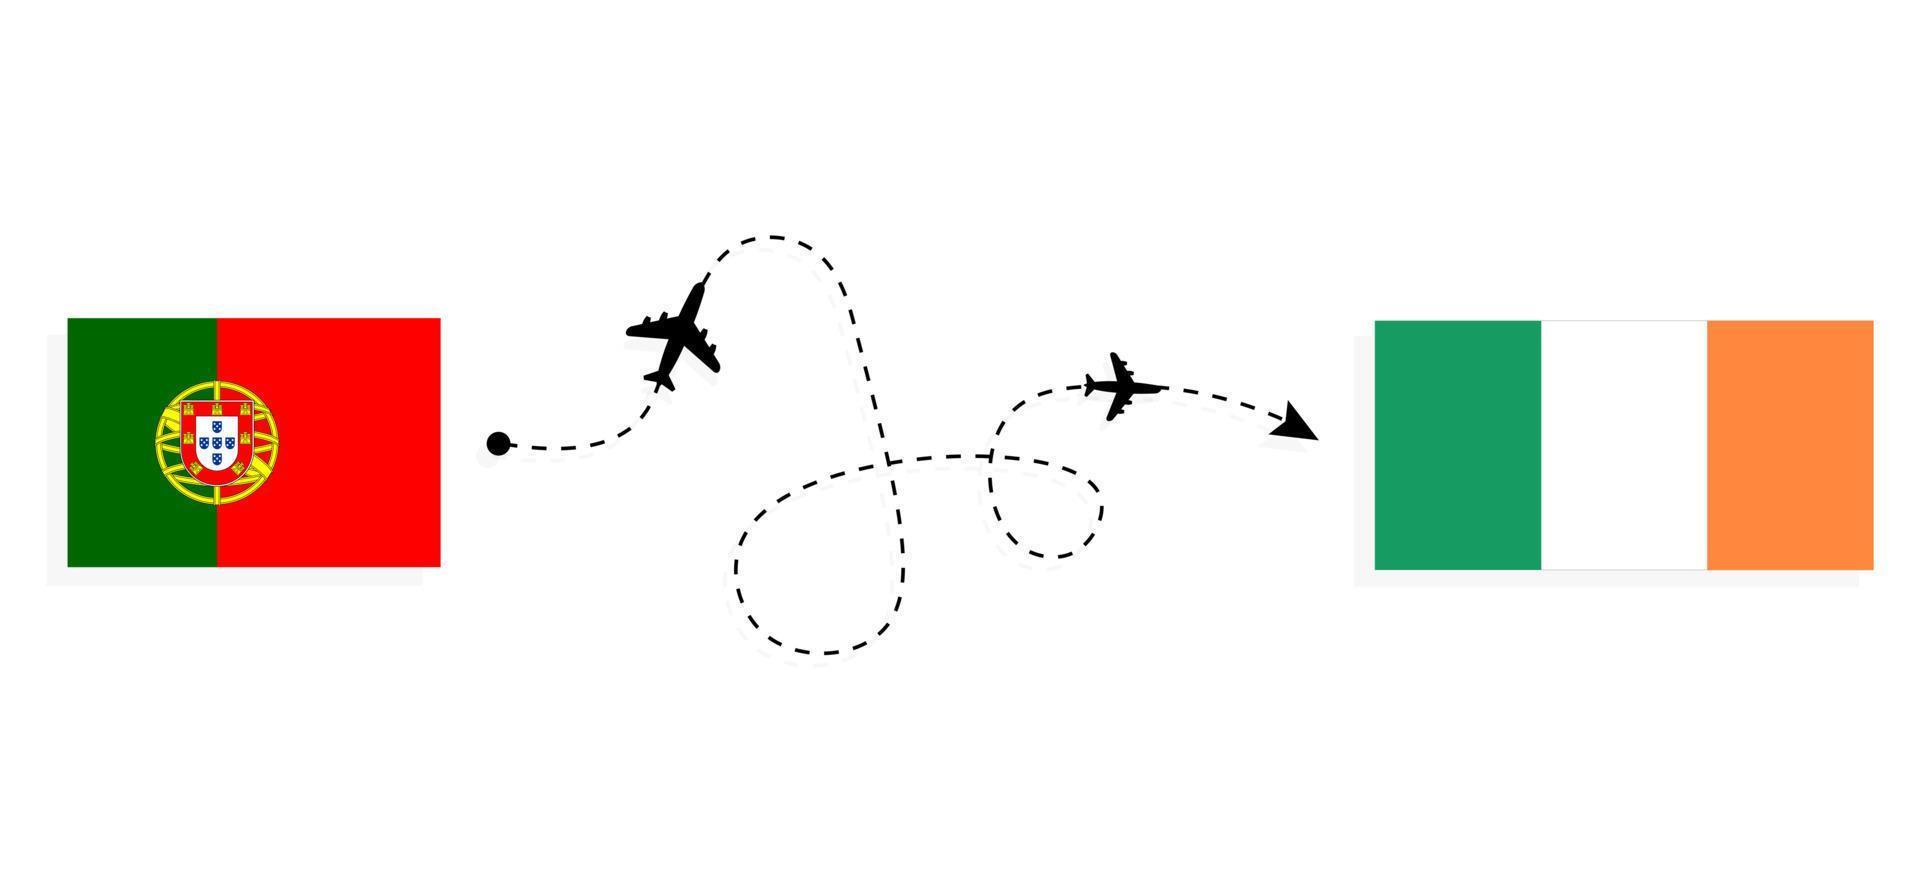 flyg och resor från Portugal till Irland med passagerarflygplan vektor